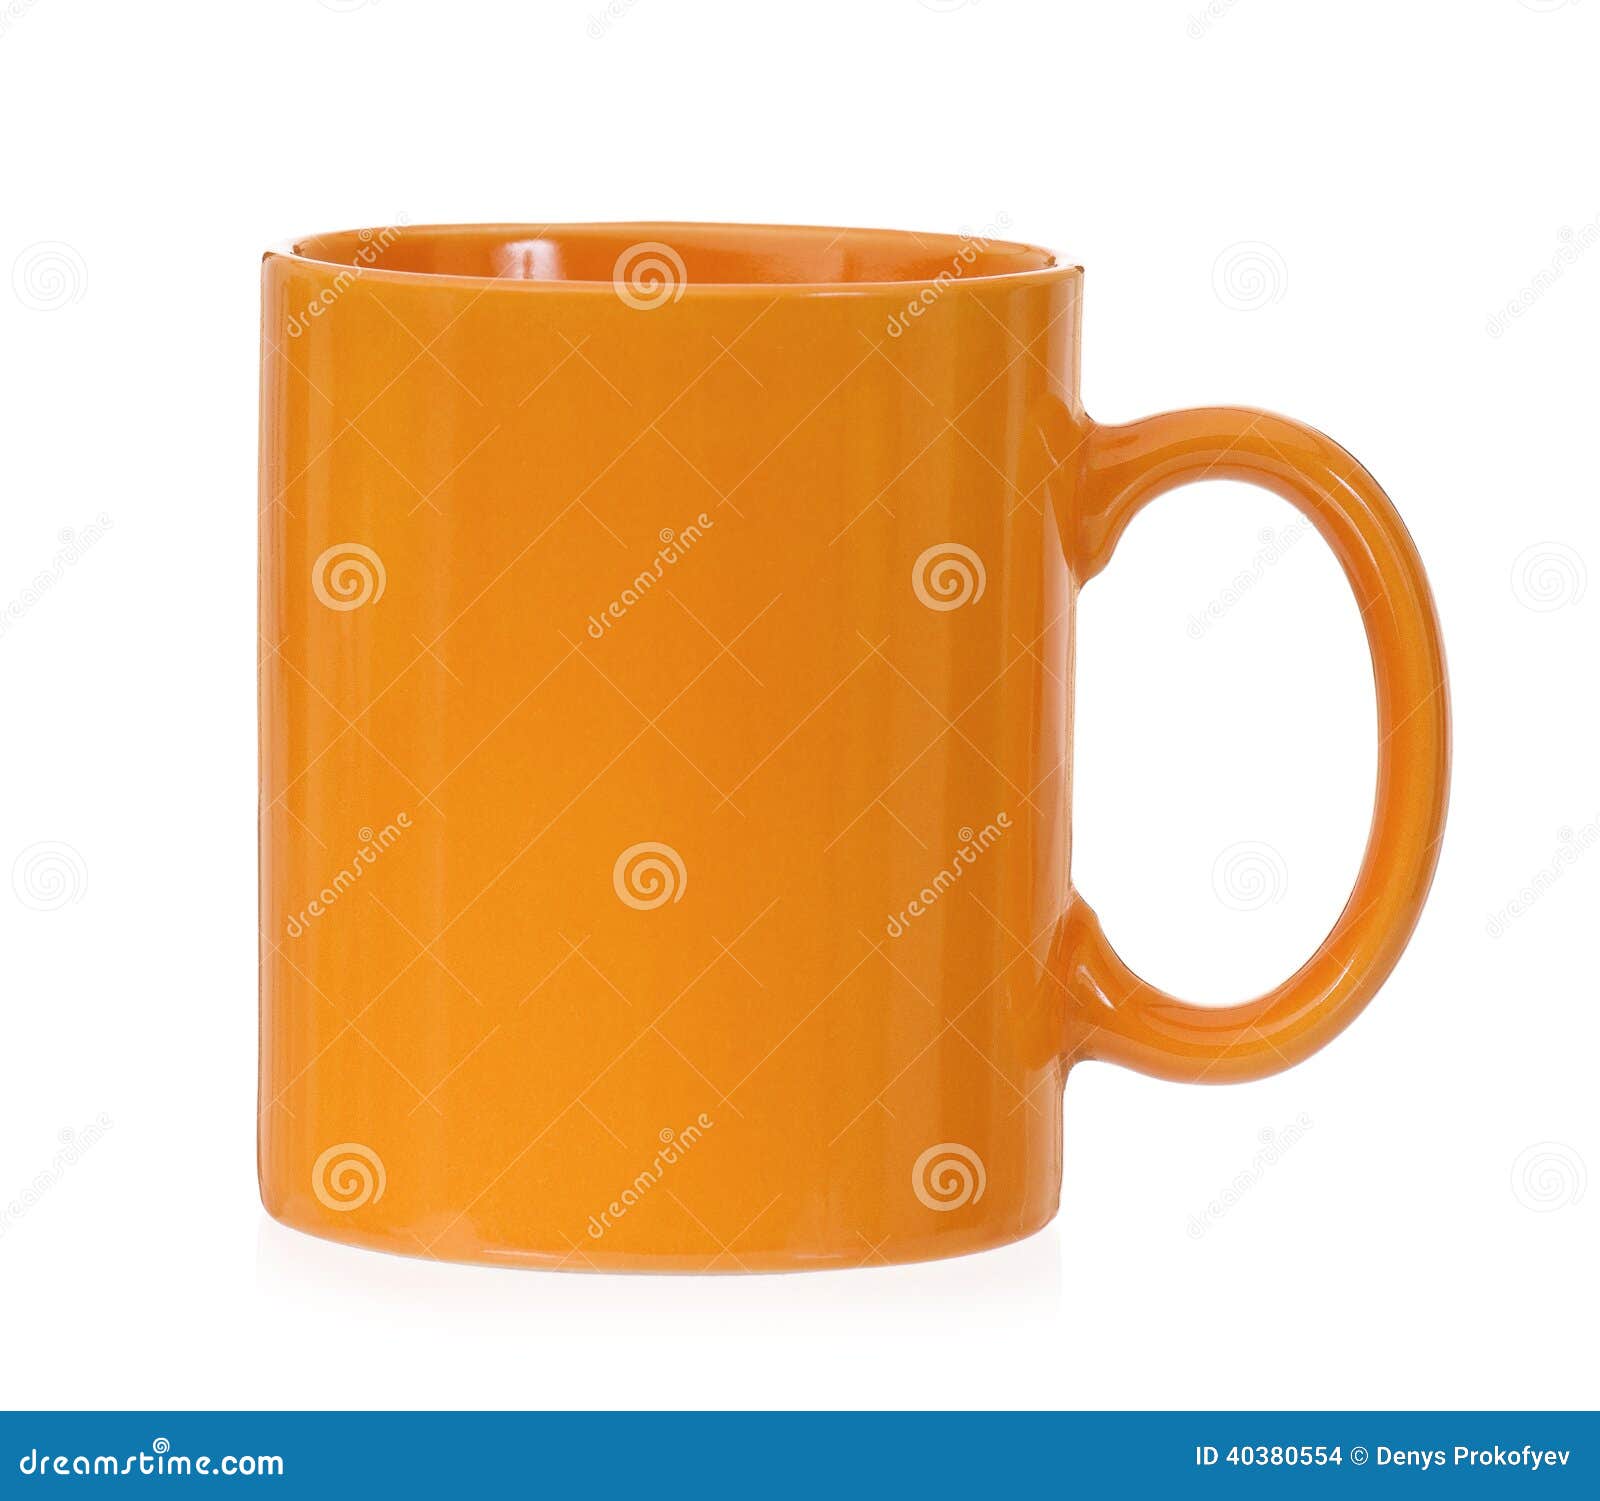 Porcelana Fina Panotone 1505 Taza de Desayuno Color Naranja y Blanco